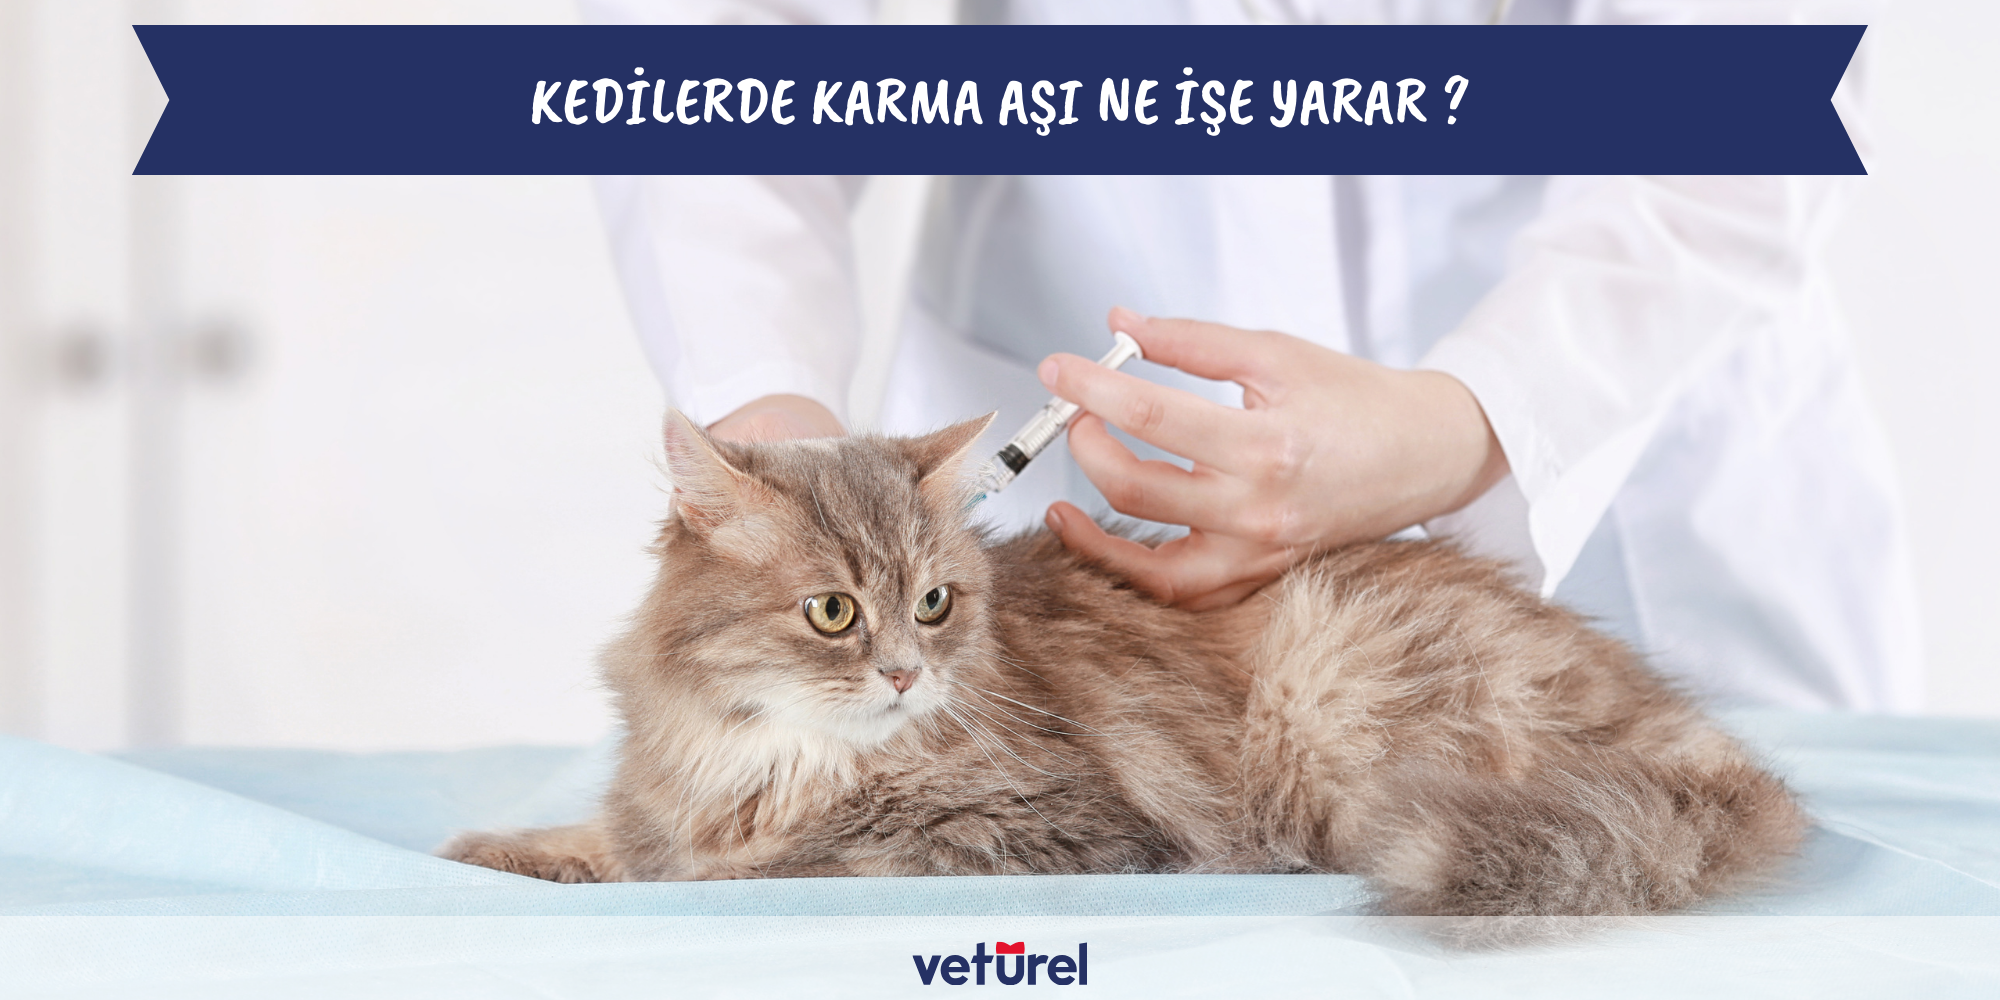 kedilerde karma aşı